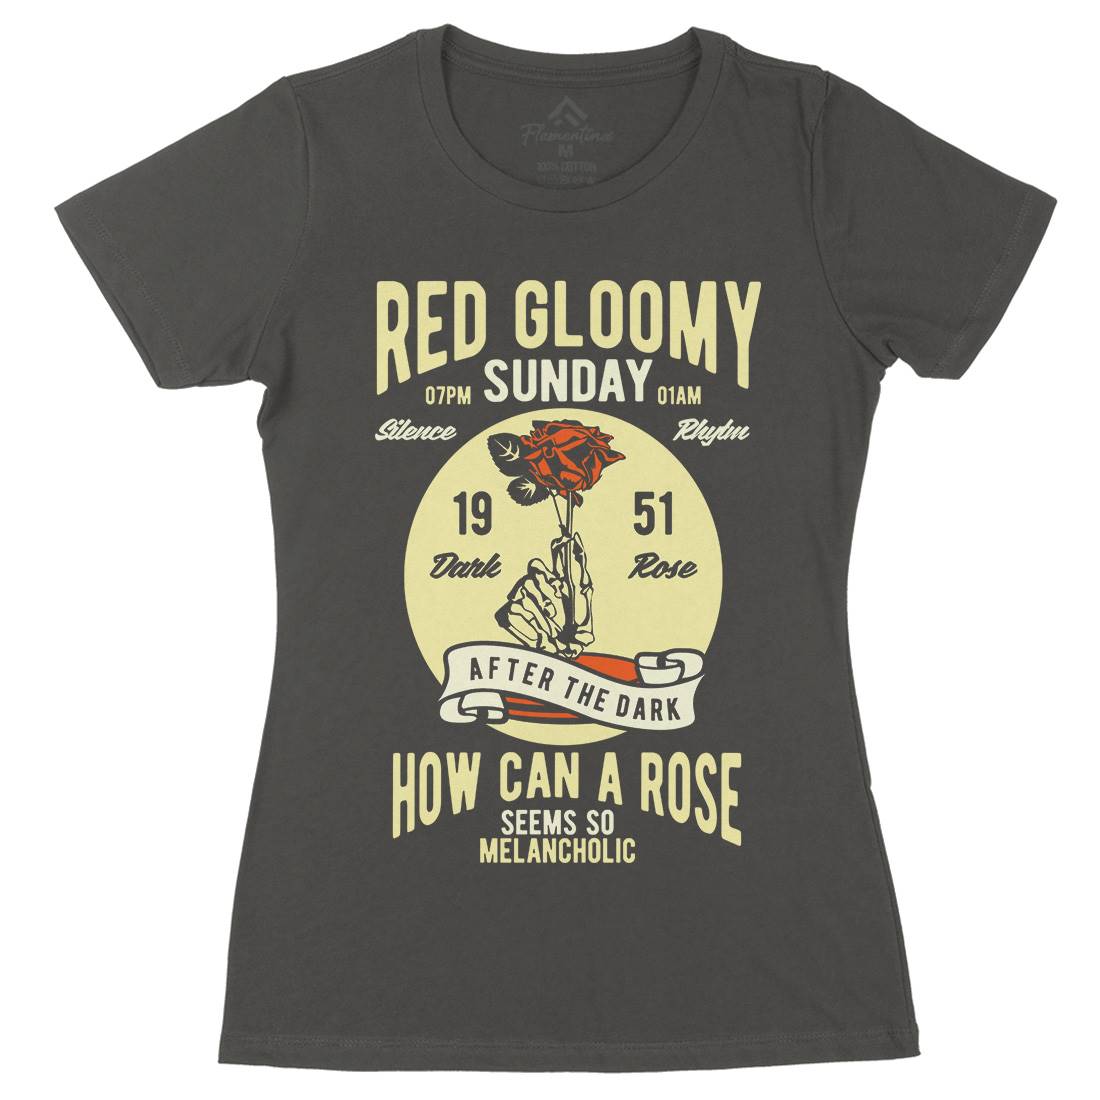 Red Gloomy Sunday Womens Organic Crew Neck T-Shirt Retro B437